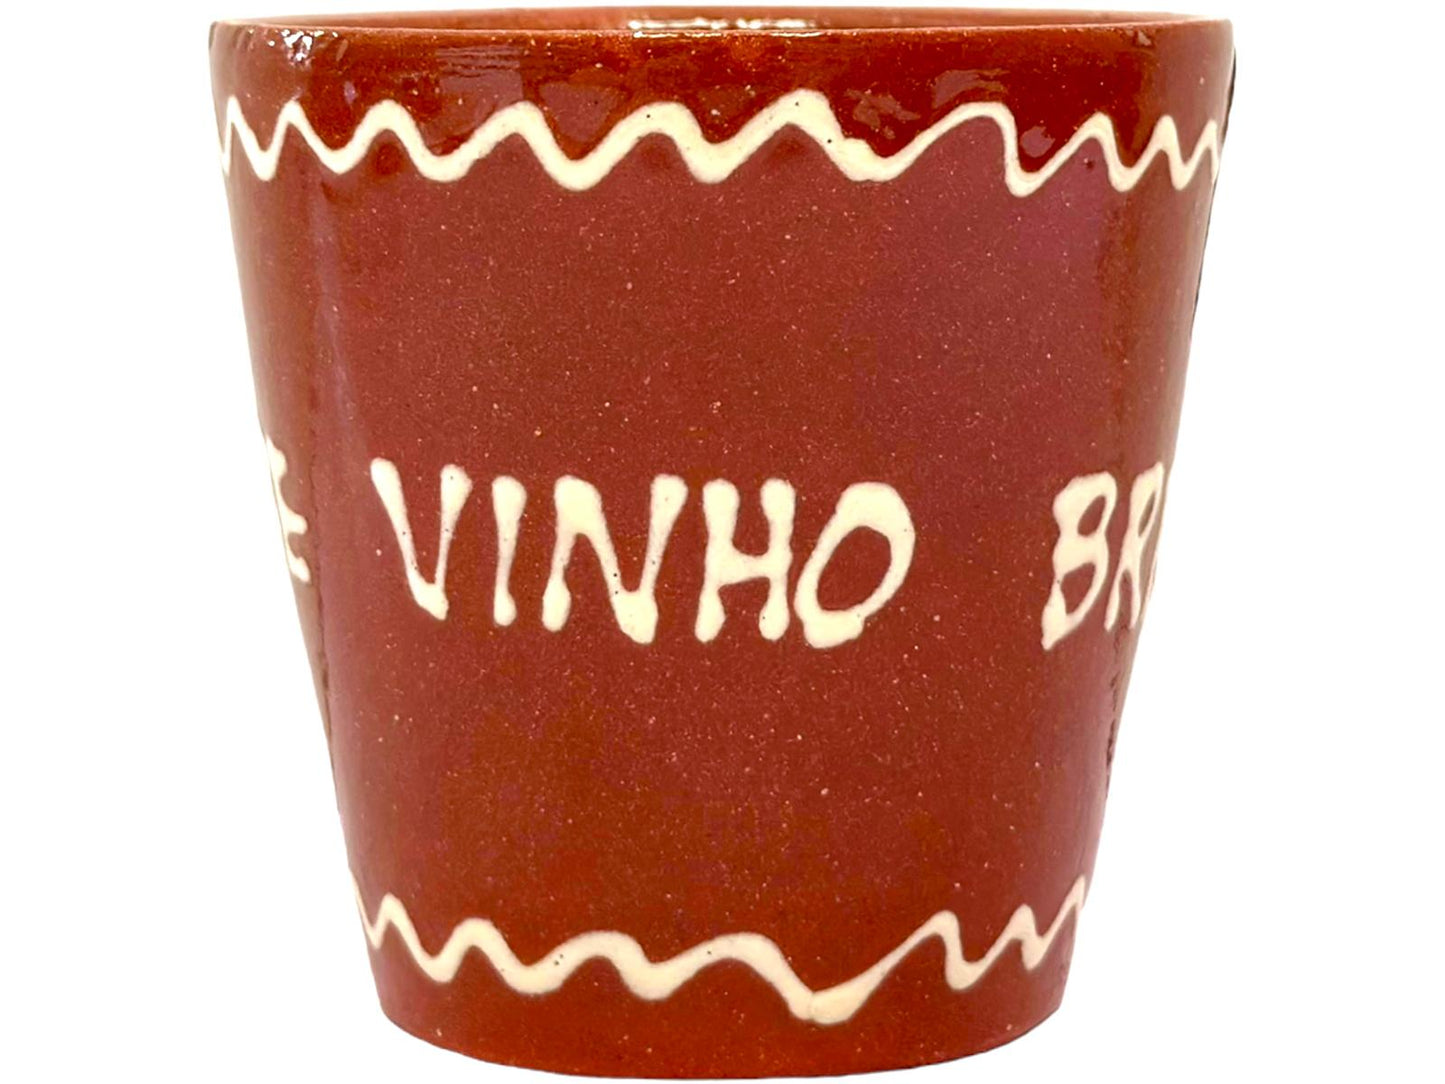 Edgar Picas Copo Direito Bebe Vinho Branco Portuguese Terracotta Mug 8.5cm x 9cm